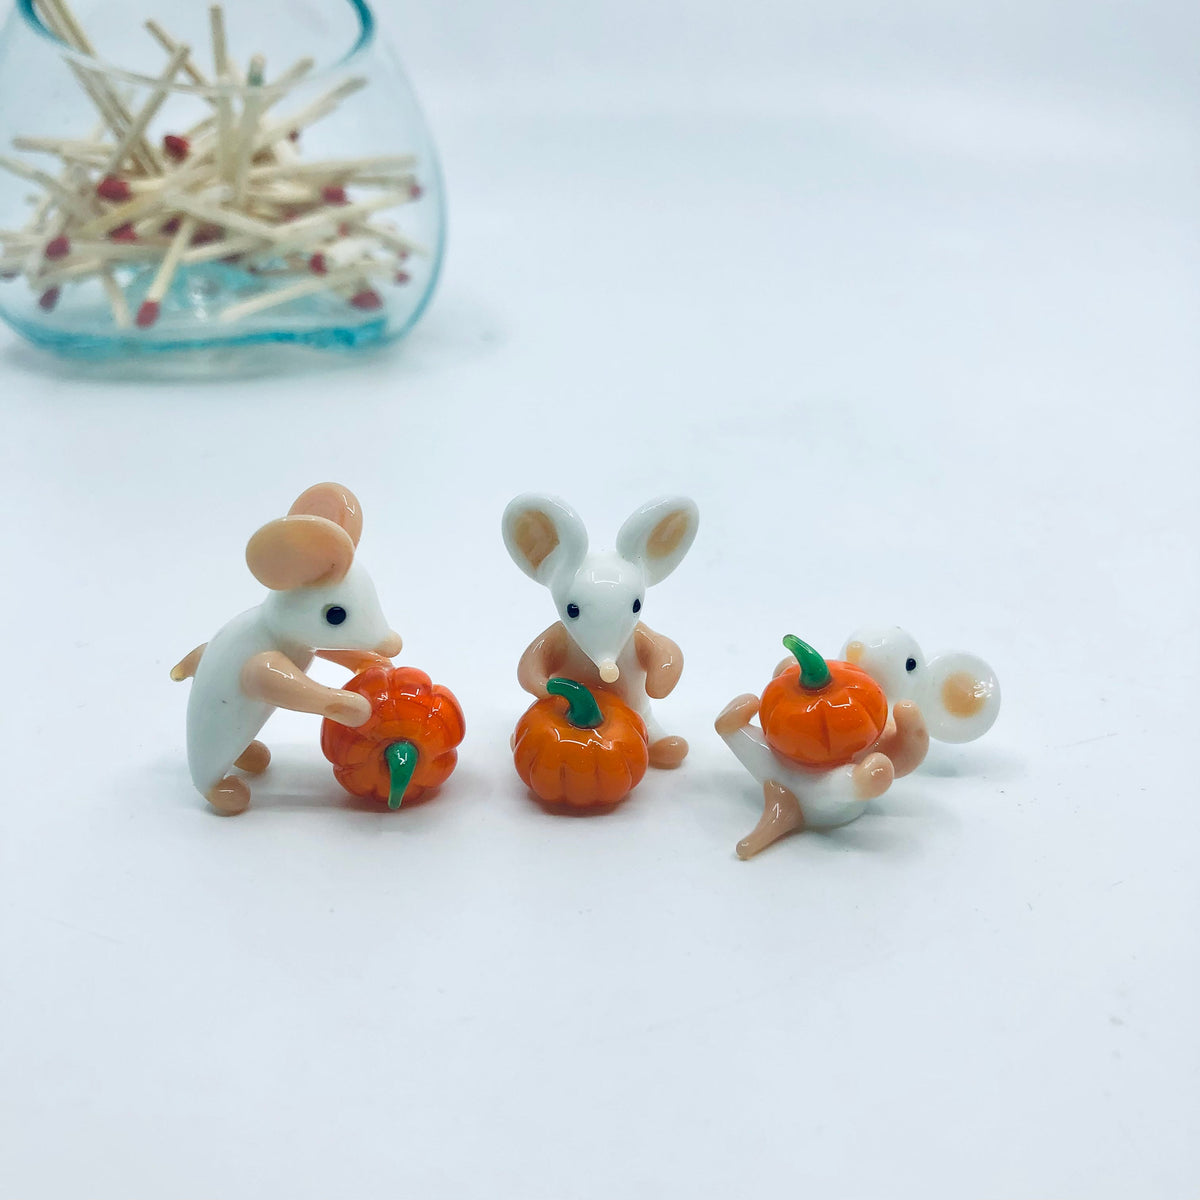 Tiny Pumpkin Pal Mouse - Laying Miniature - 